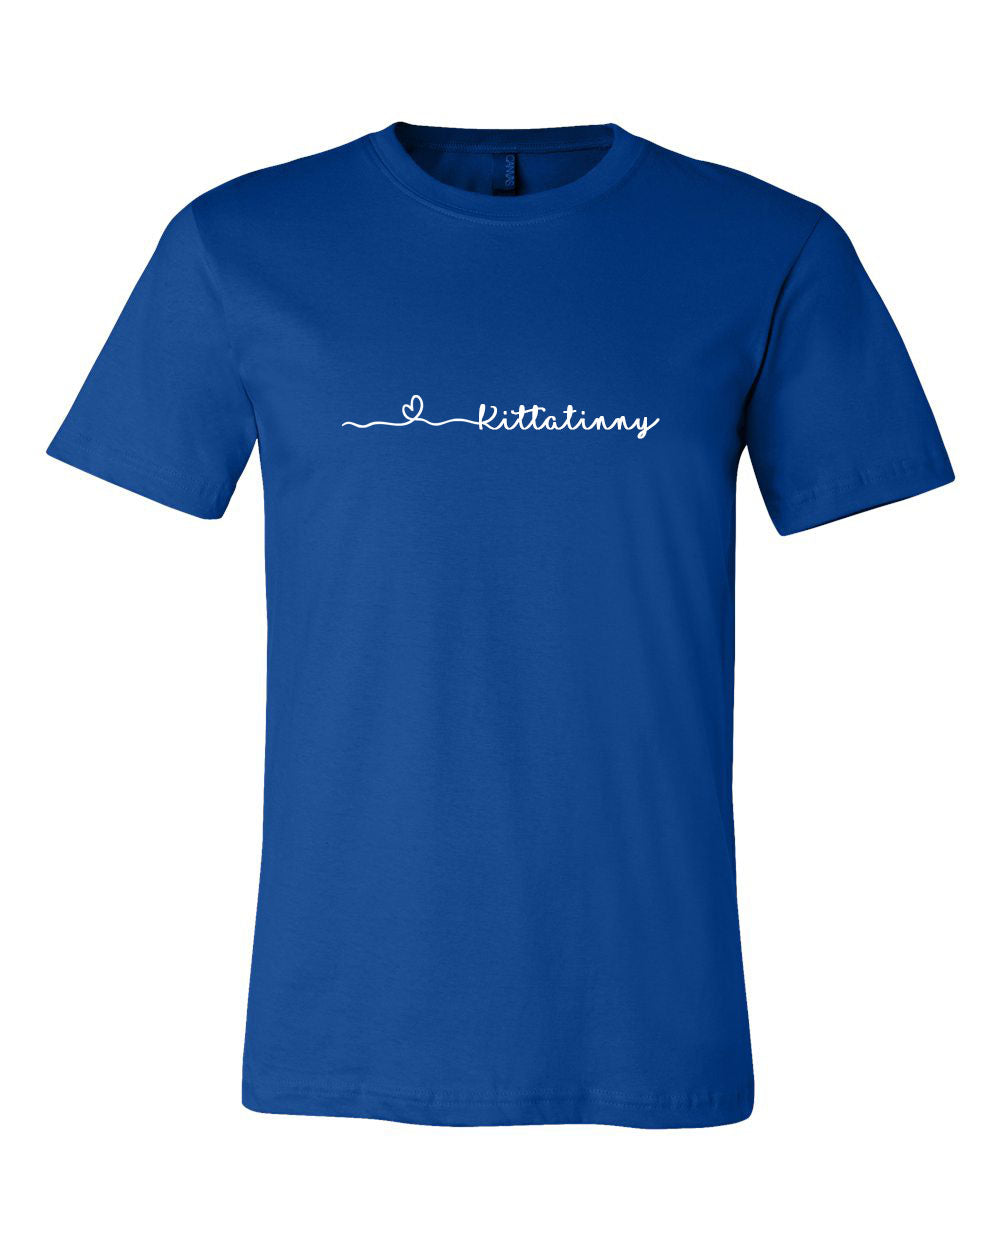 Love Kittatinny T-Shirt, Stillwater